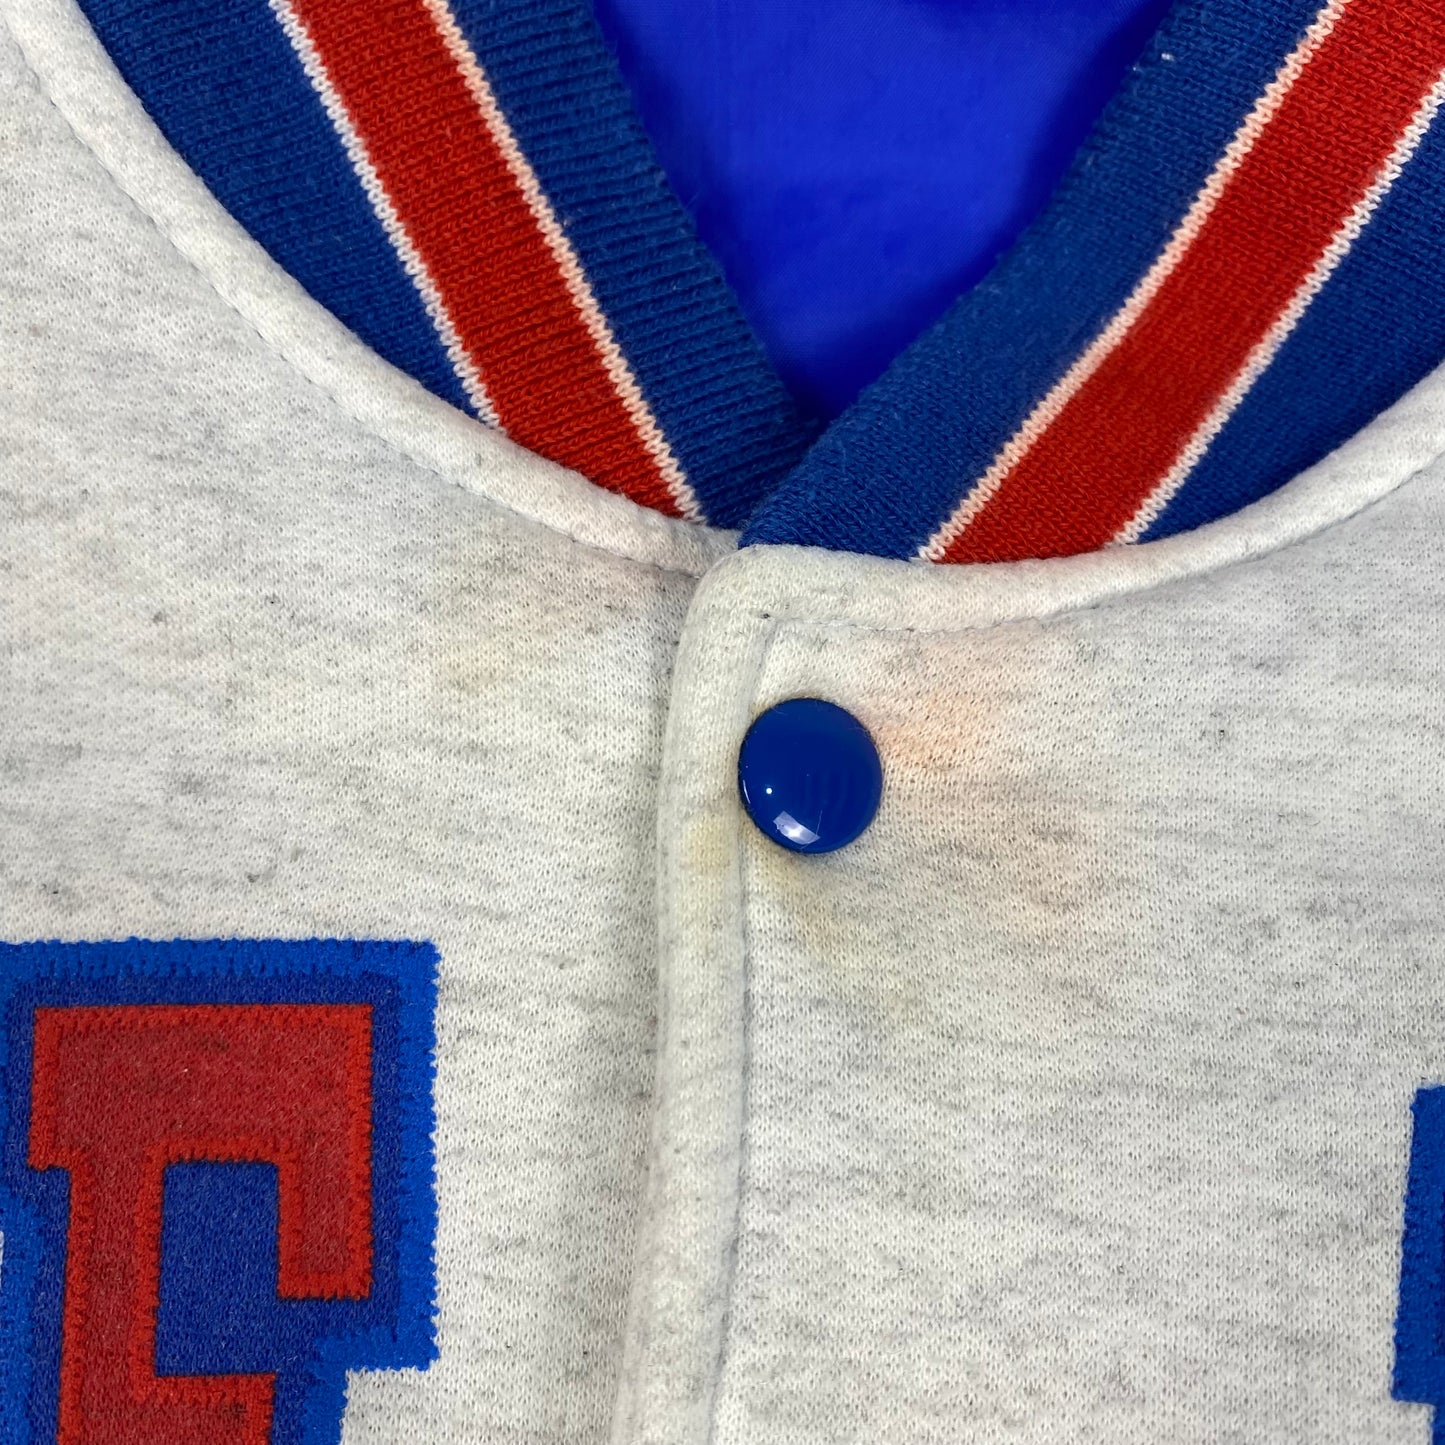 Vintage Toronto Blue Jays 1992 Varsity Jacket (M)